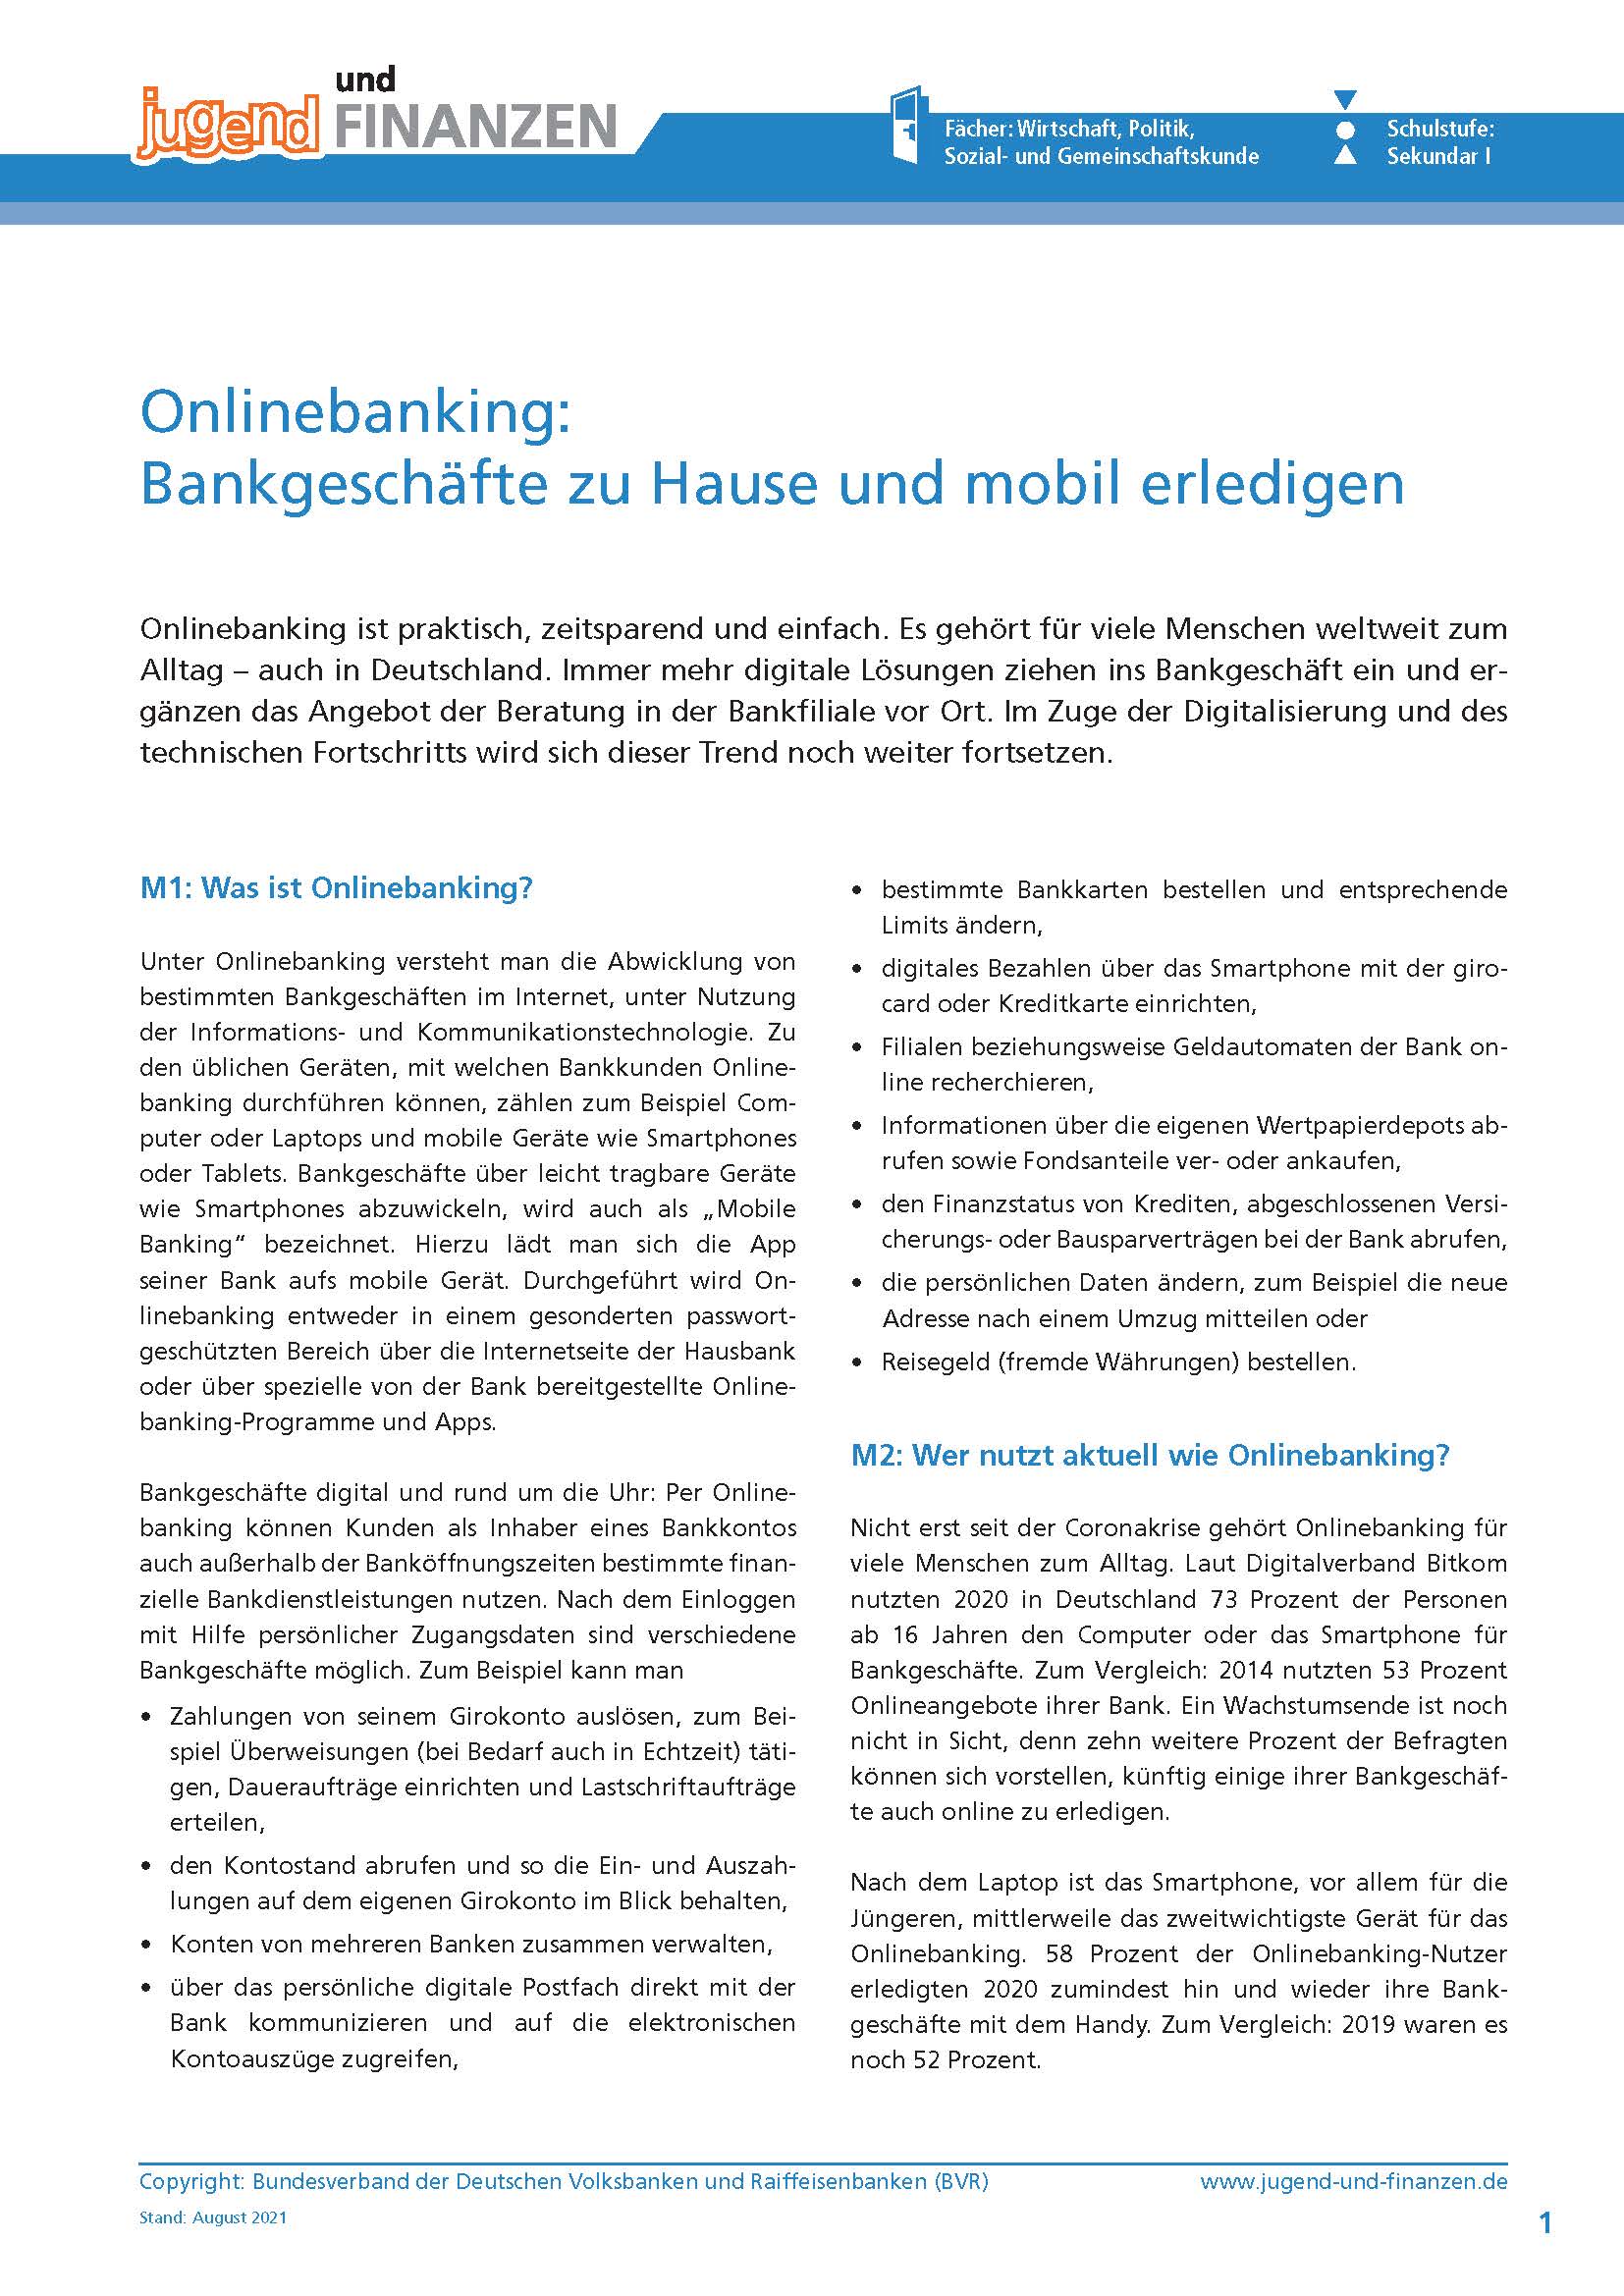 Arbeitsblatt "Onlinebanking: Bankgeschäfte zu Hause und mobil erledigen"